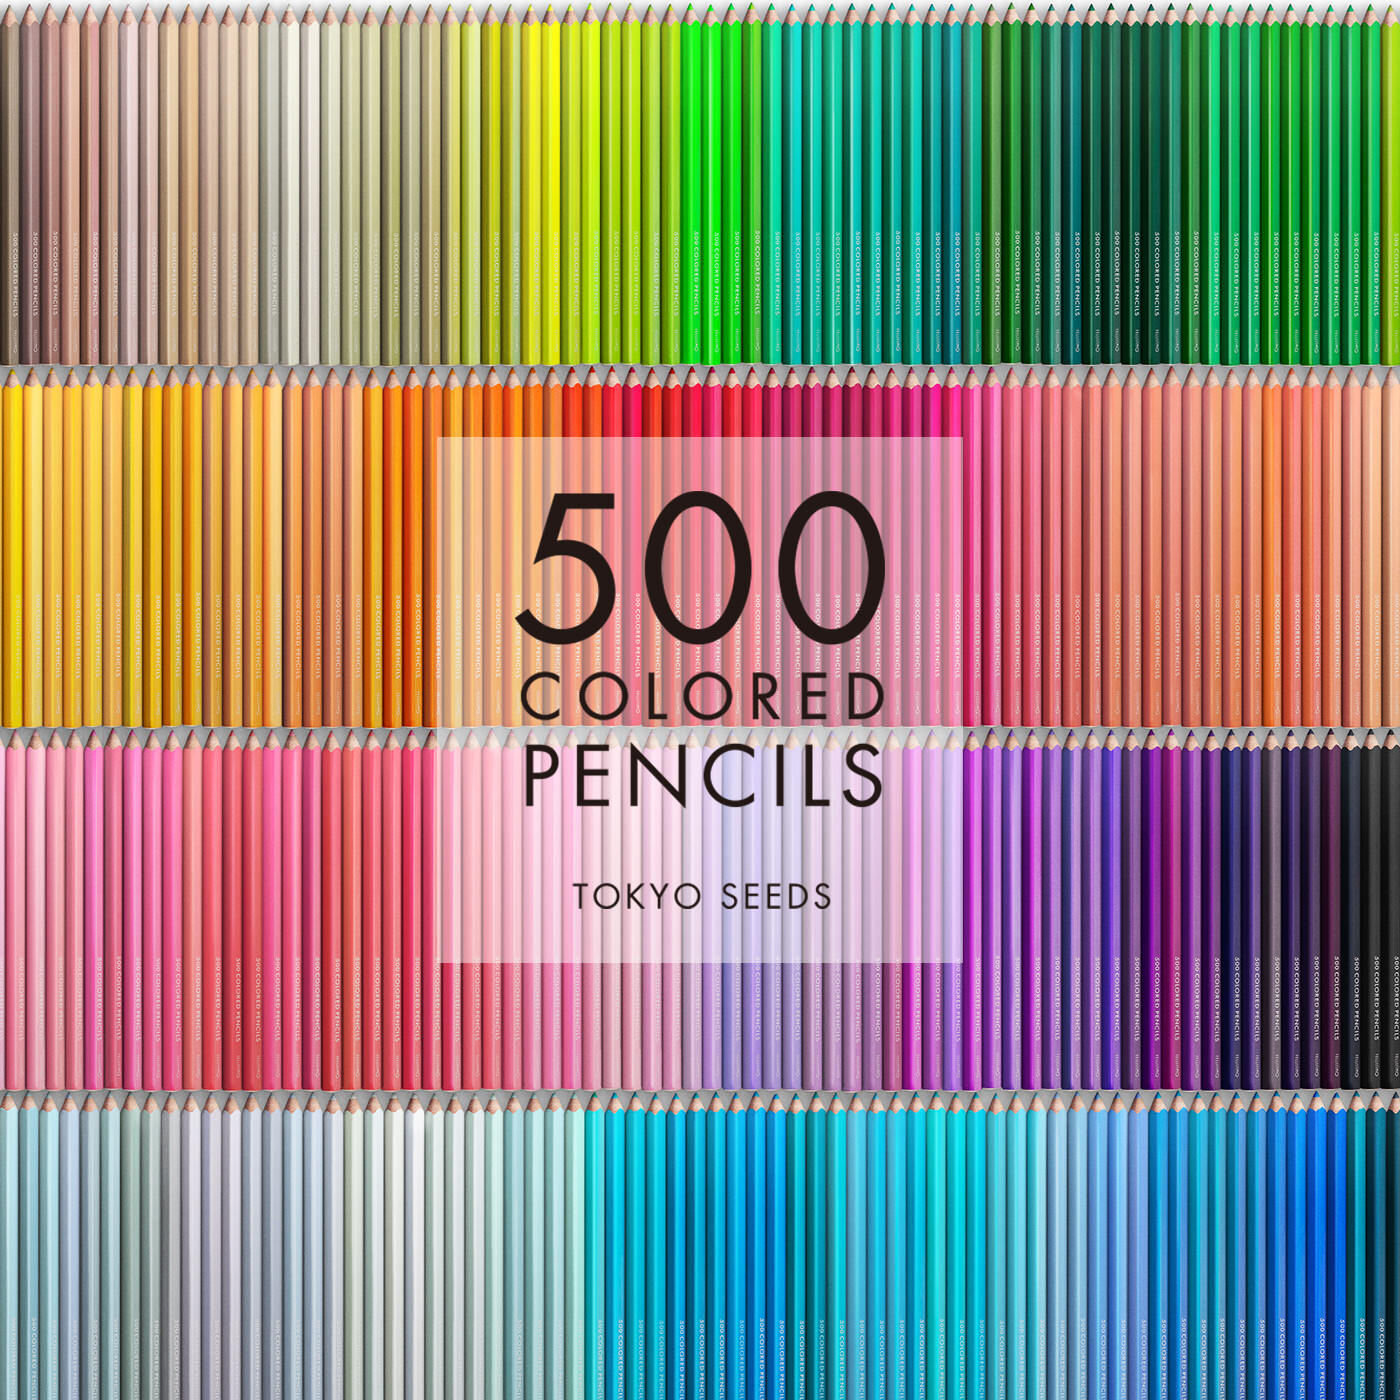 Real Stock|【48/500 TREEHUT HIDEOUT】500色の色えんぴつ TOKYO SEEDS|1992年、世界初の「500色」という膨大な色数の色えんぴつが誕生して以来、その販売数は発売当初から合わせると、世界55ヵ国10万セット以上。今回、メイド・イン・ジャパンにこだわり、すべてが新しく生まれ変わって登場しました。